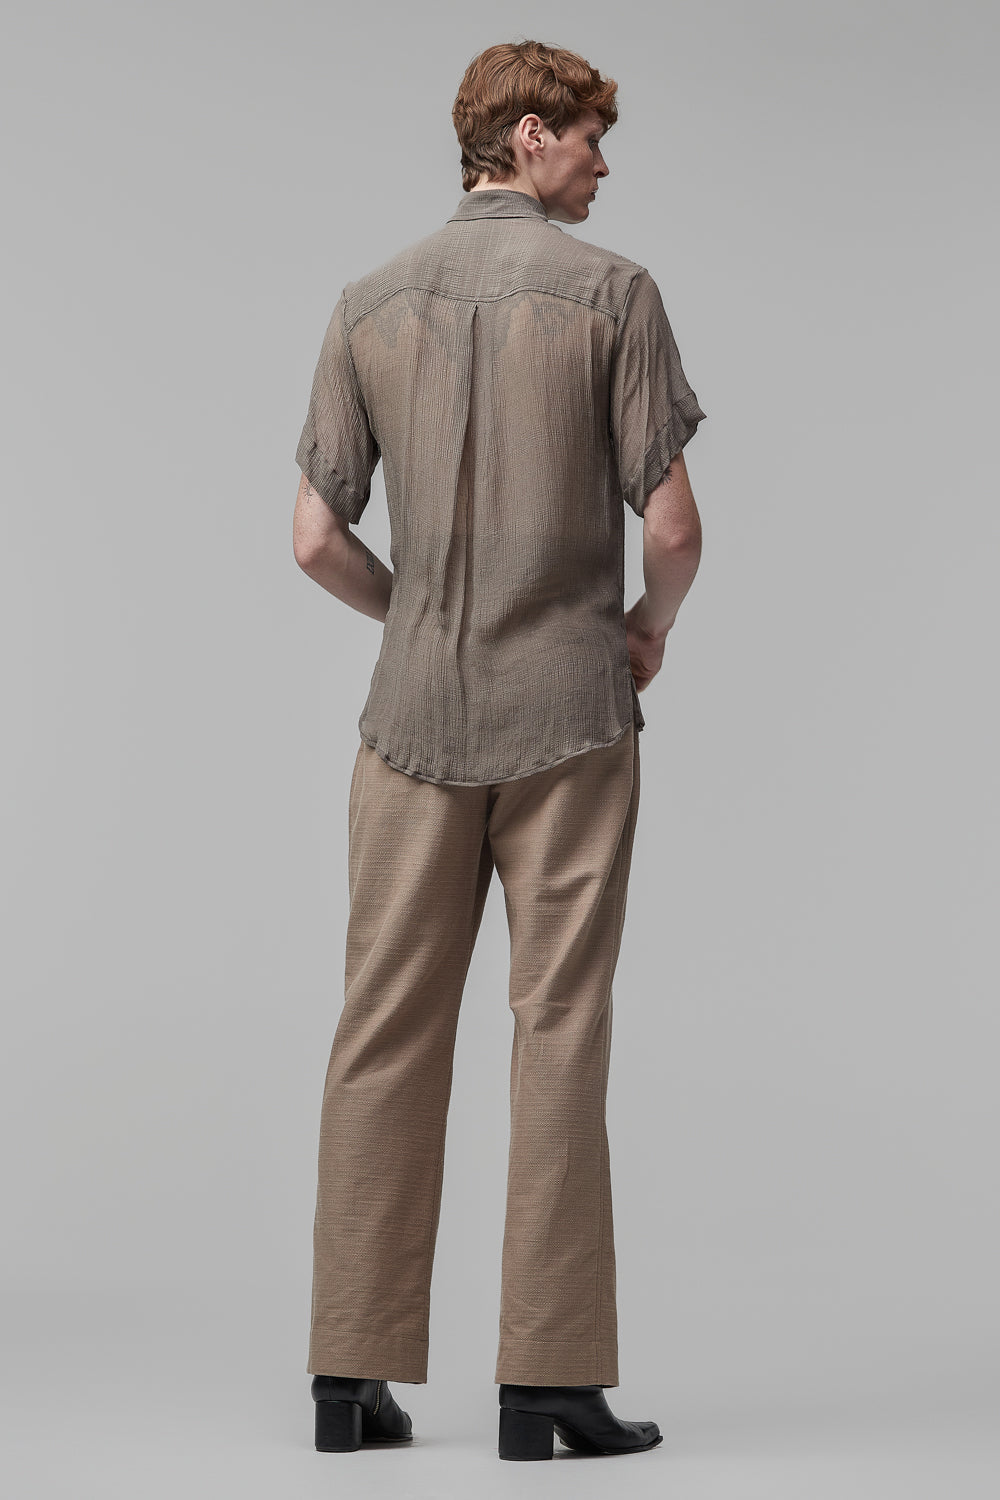 Camisa de Mangas Curtas em Chiffon de Seda Cinza com Detalhe em Relevo